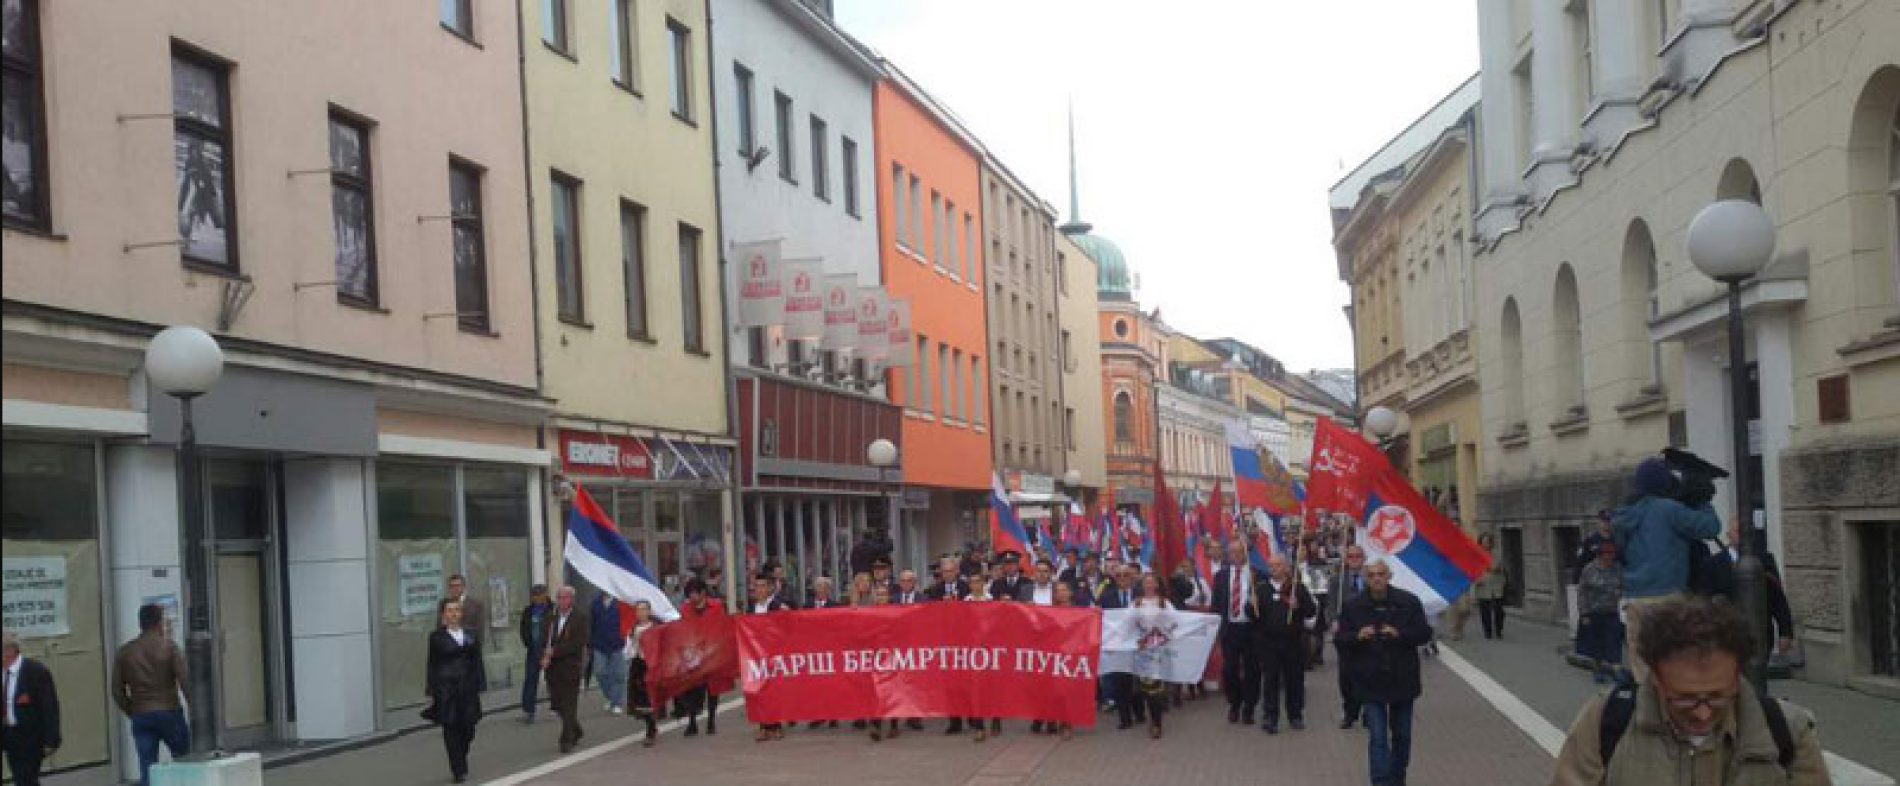 Banjalučki ‘Marš na Drinu’ i šizofrenija (anti)fašizma